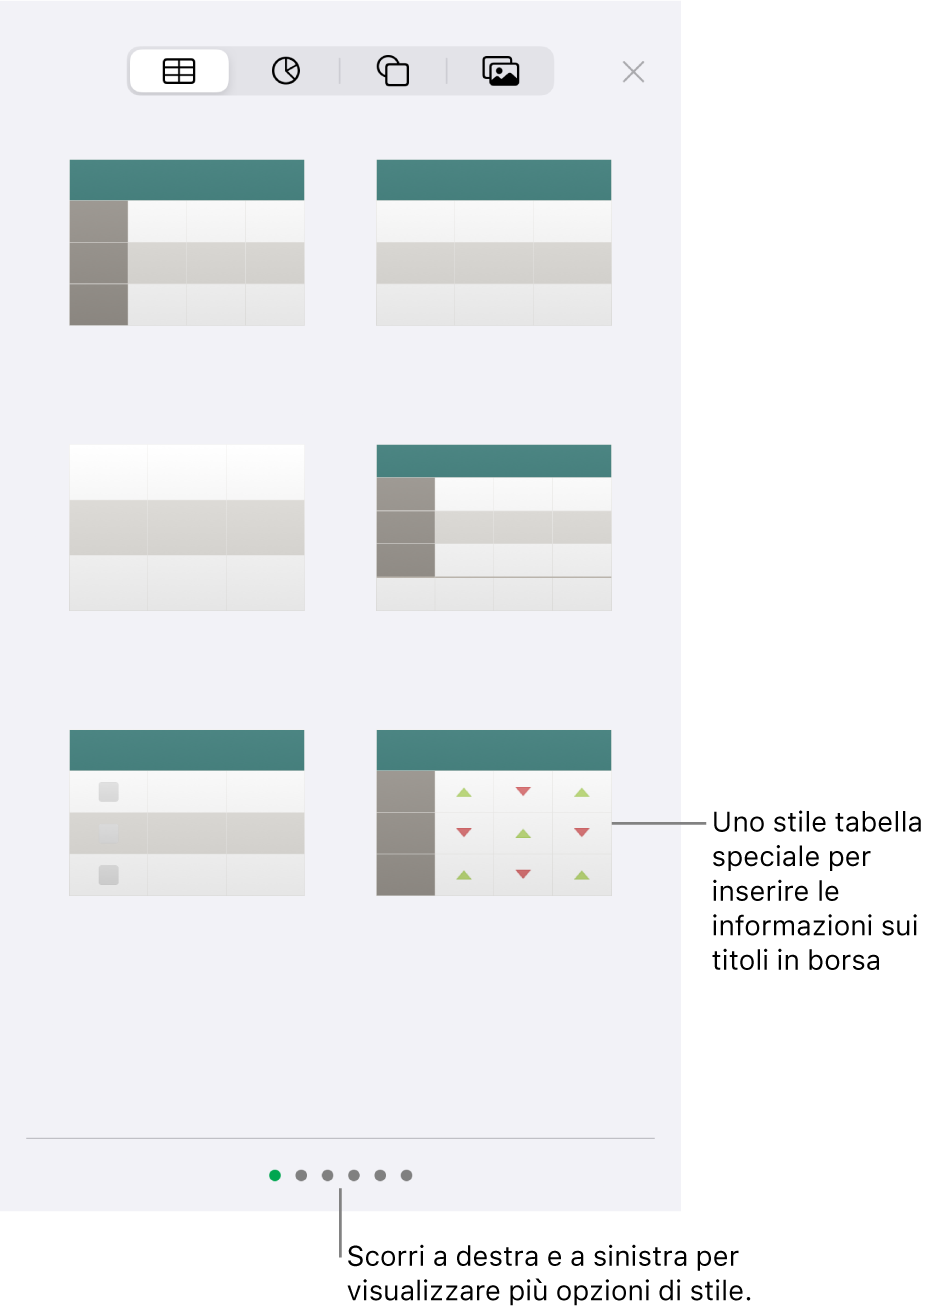 Miniature degli stili di tabella disponibili, con uno stile speciale per inserire informazioni azionarie nell'angolo in basso a destra. Sei punti in basso indicano che puoi scorrere per visualizzare altri stili.